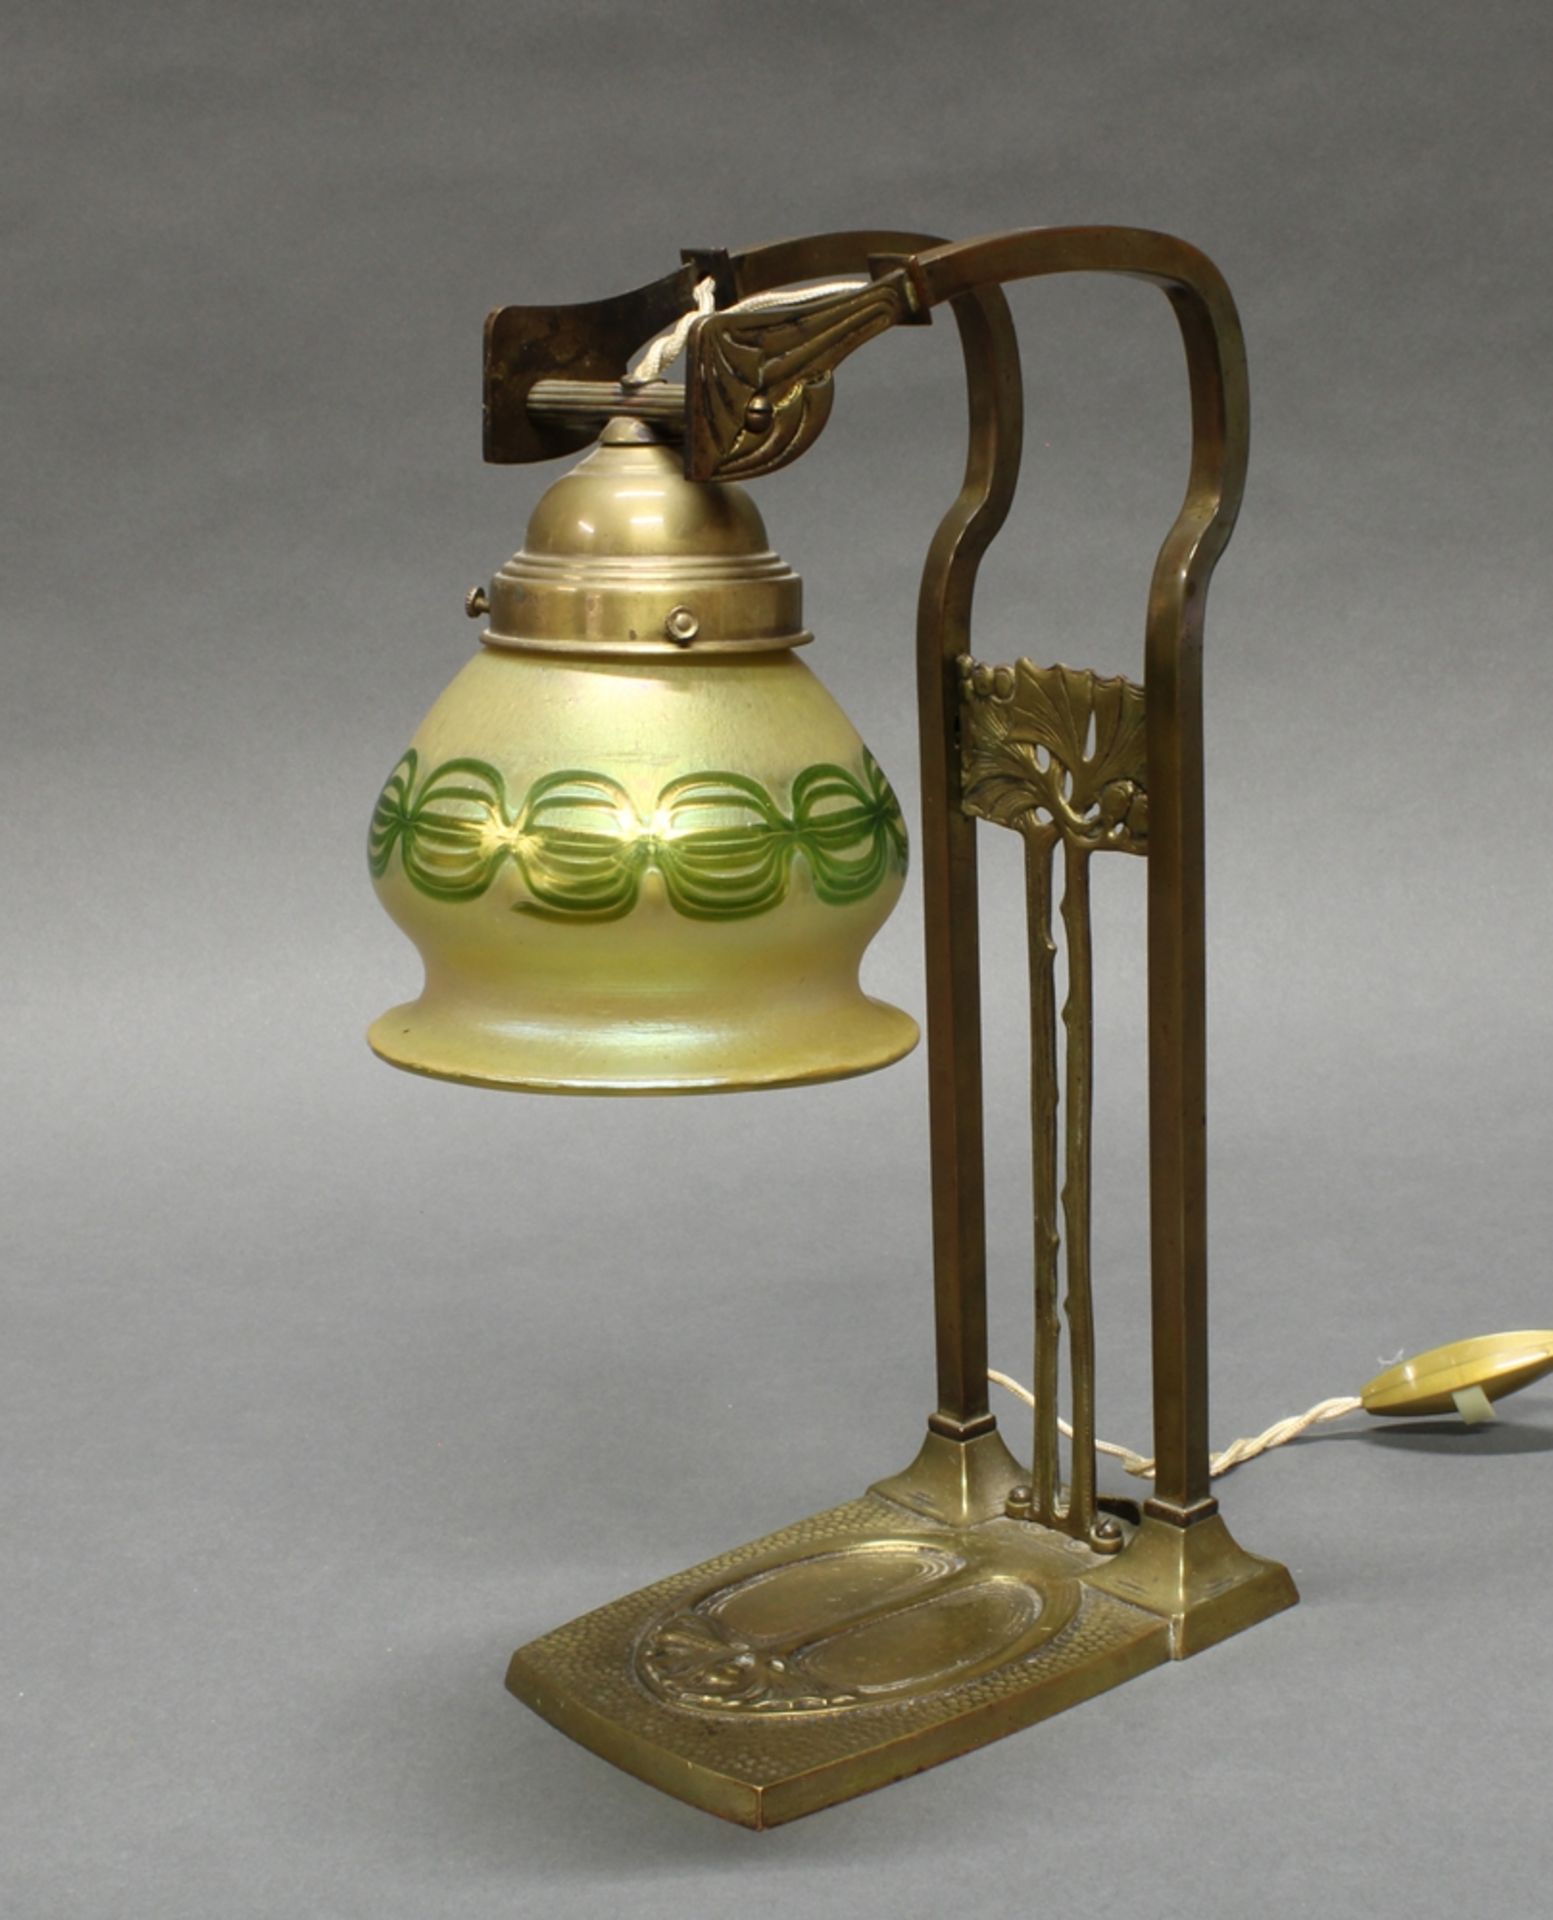 Tischlampe, Jugendstil, 1920er Jahre, Messinggestell vegetabil verziert, gelblich-grüner Glasschirm